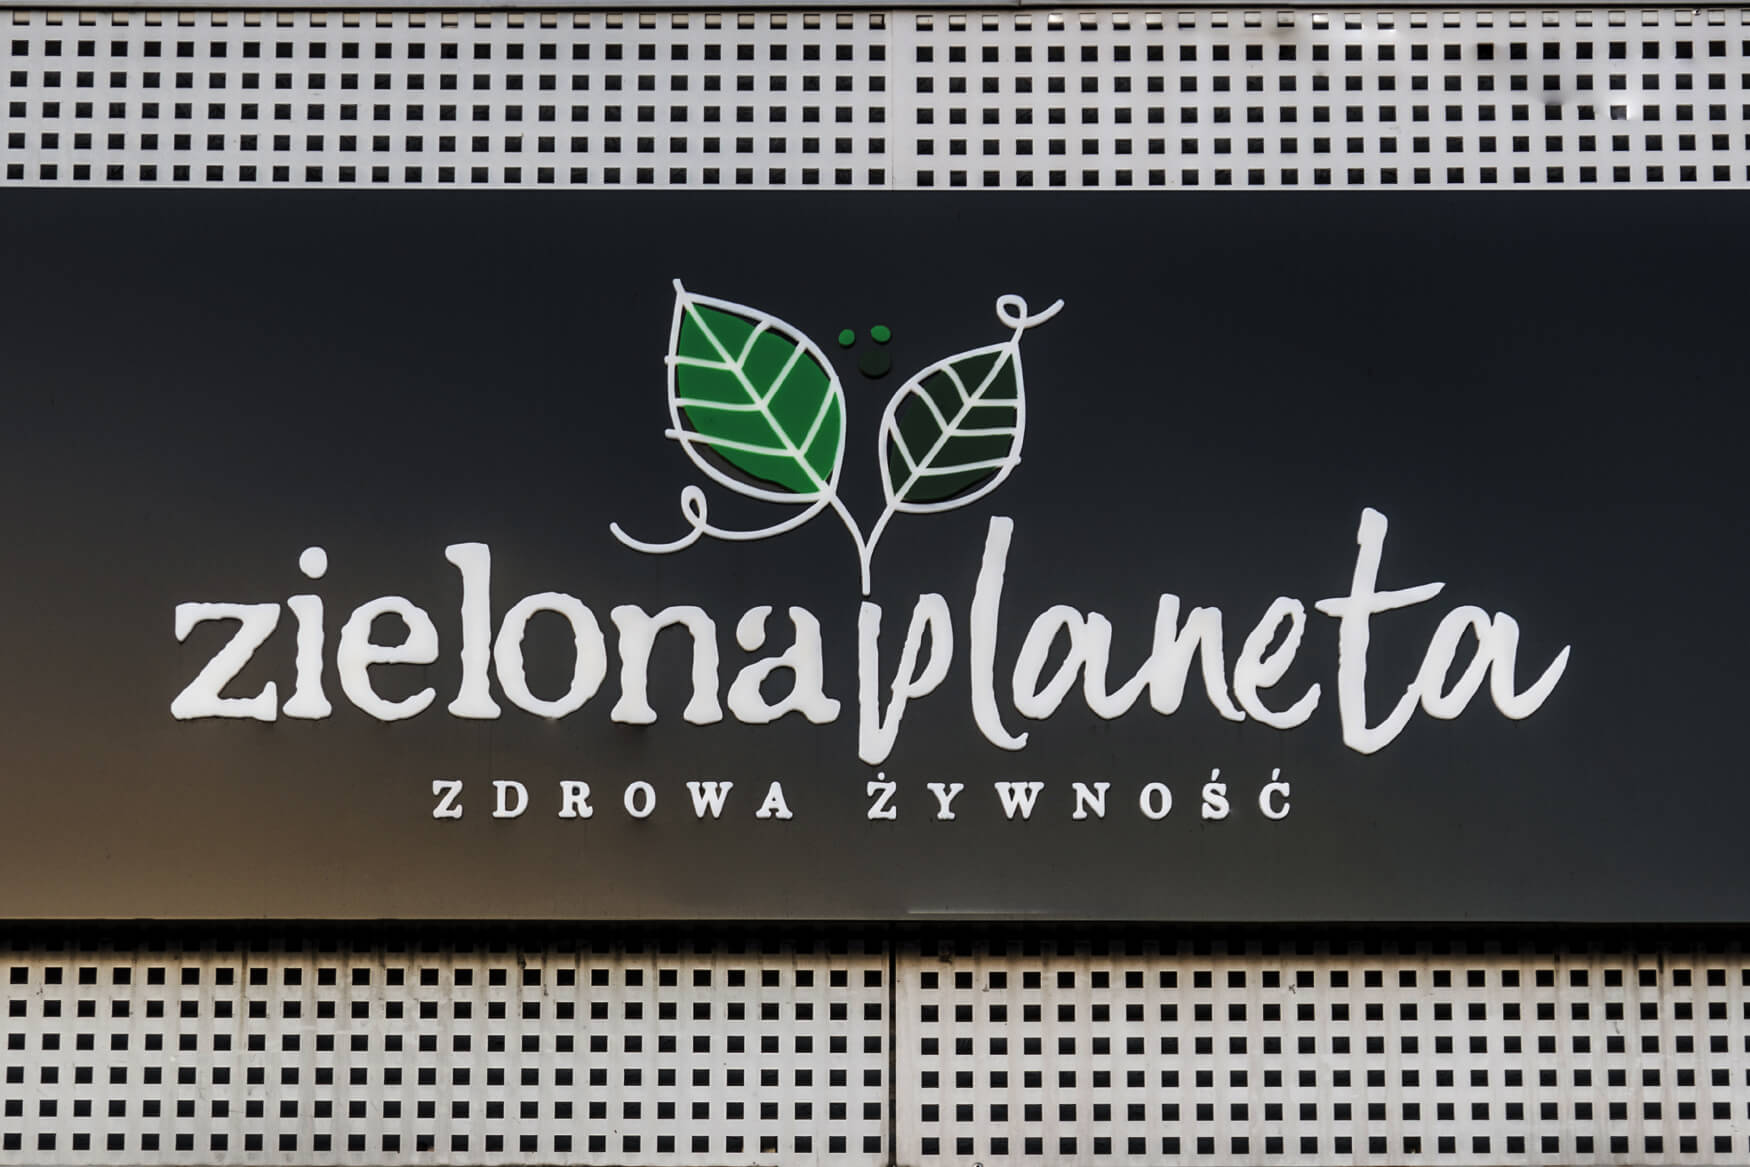 planète verte - Green Planet - boîte lumineuse publicitaire avec lettres et logo spatial